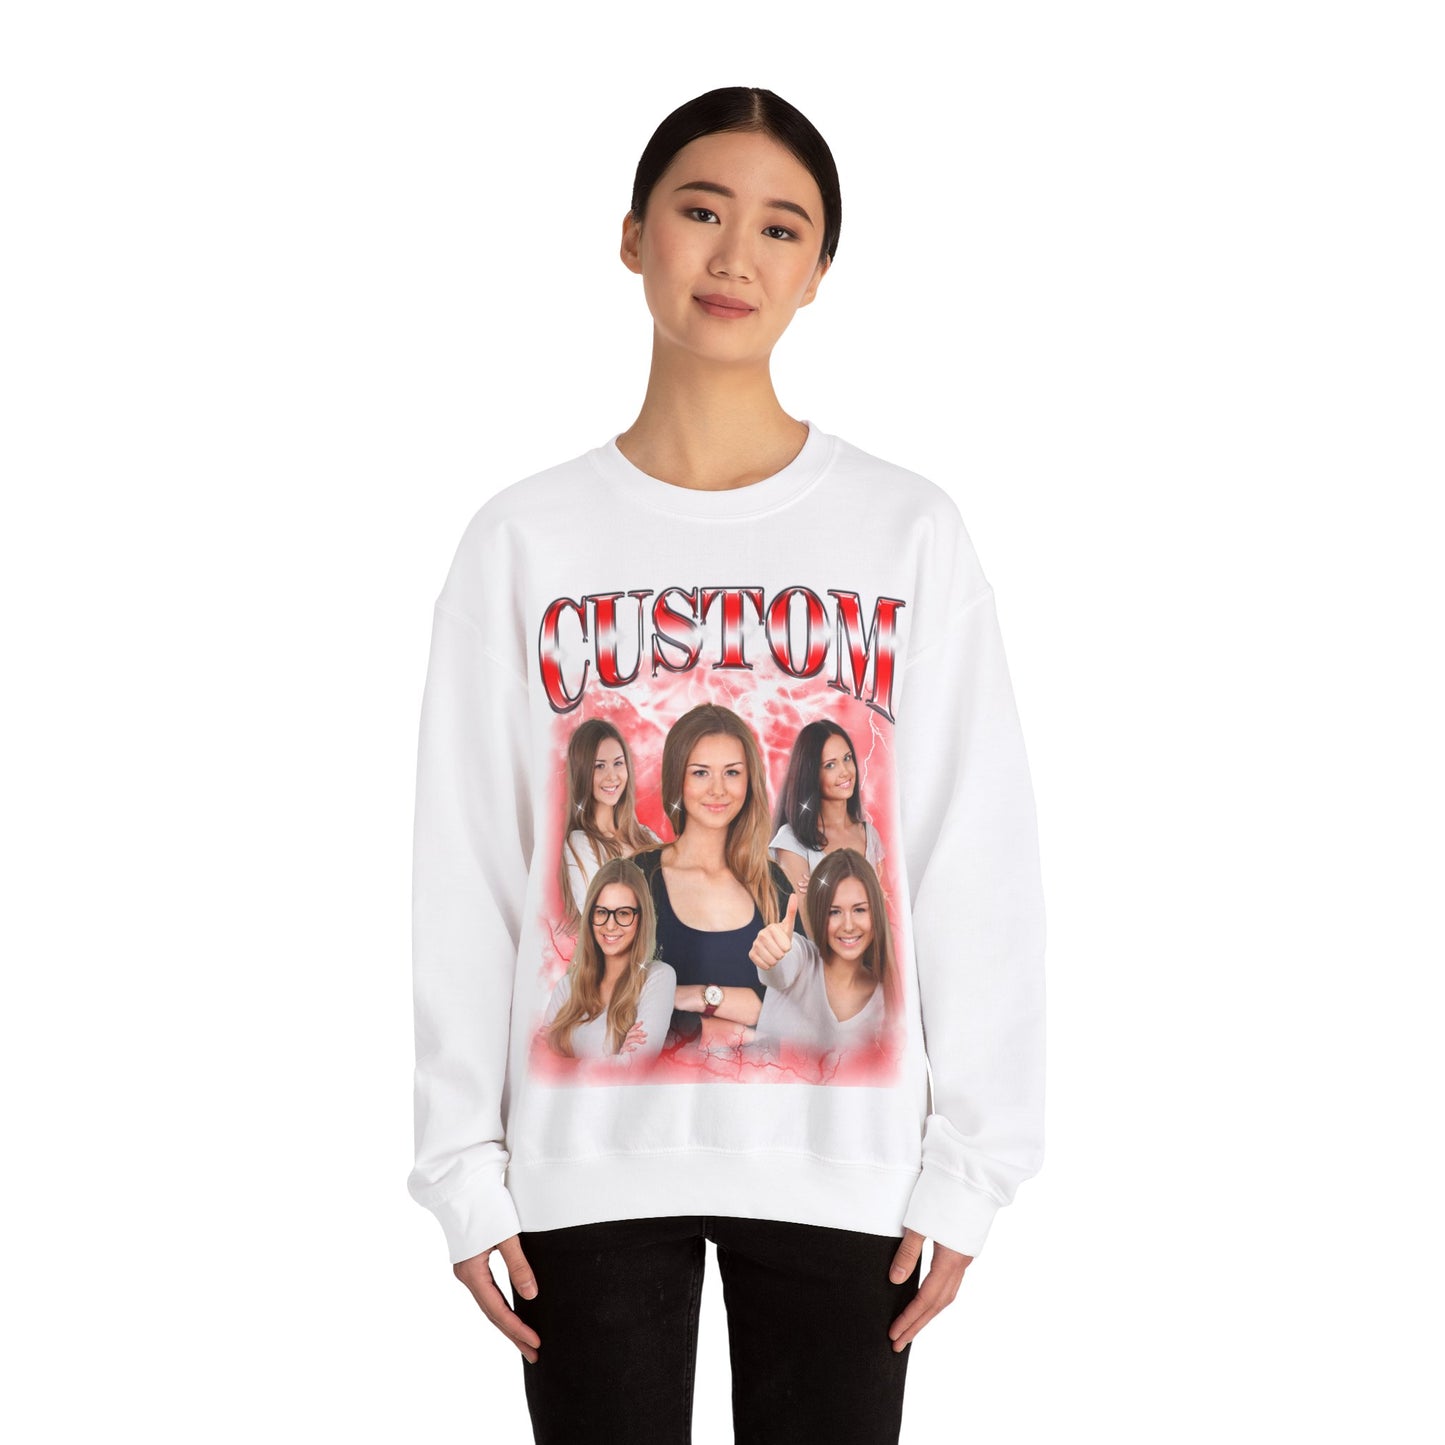 Custom Bootleg Rap Sweatshirt with Face Photo Vintage Sweatshirt, Bachelorette Surprise Sweatshirt, Birthday Gift Sweatshirt, S1596